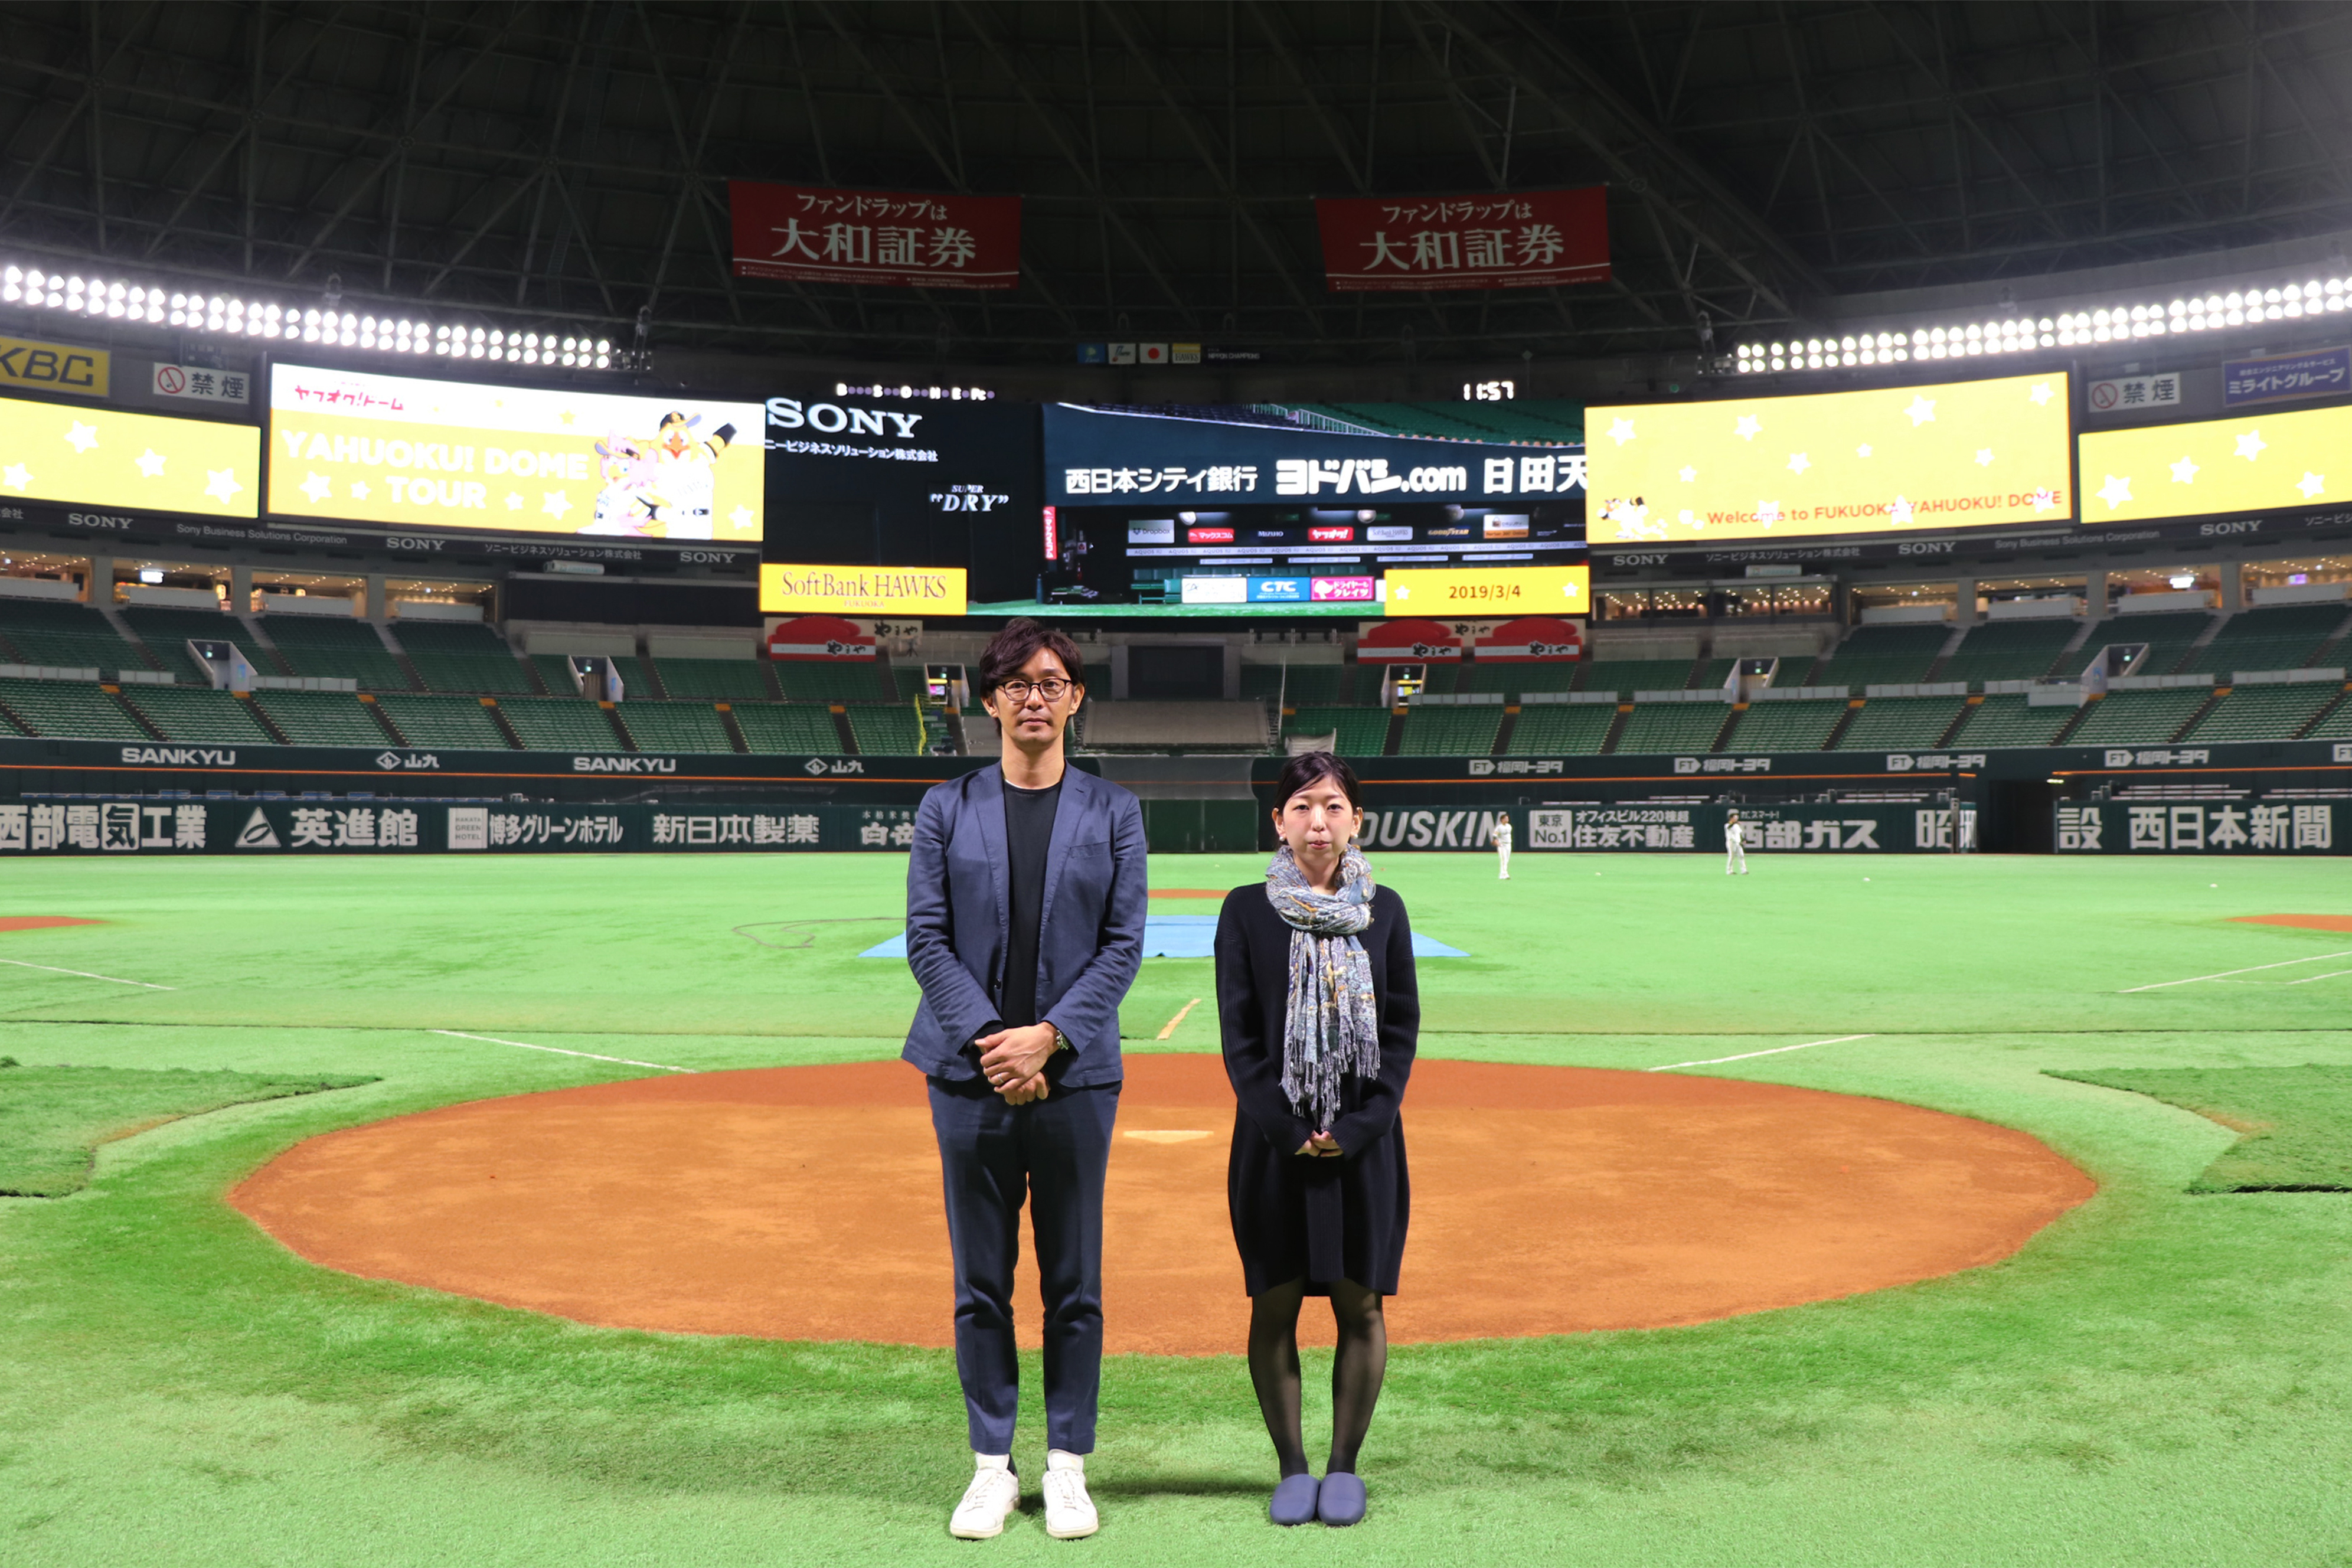 【攻めの広報インタビュー】元プロ野球選手で現ソフトバンクホークス広報の江尻さんは、一生涯プロだったお話。